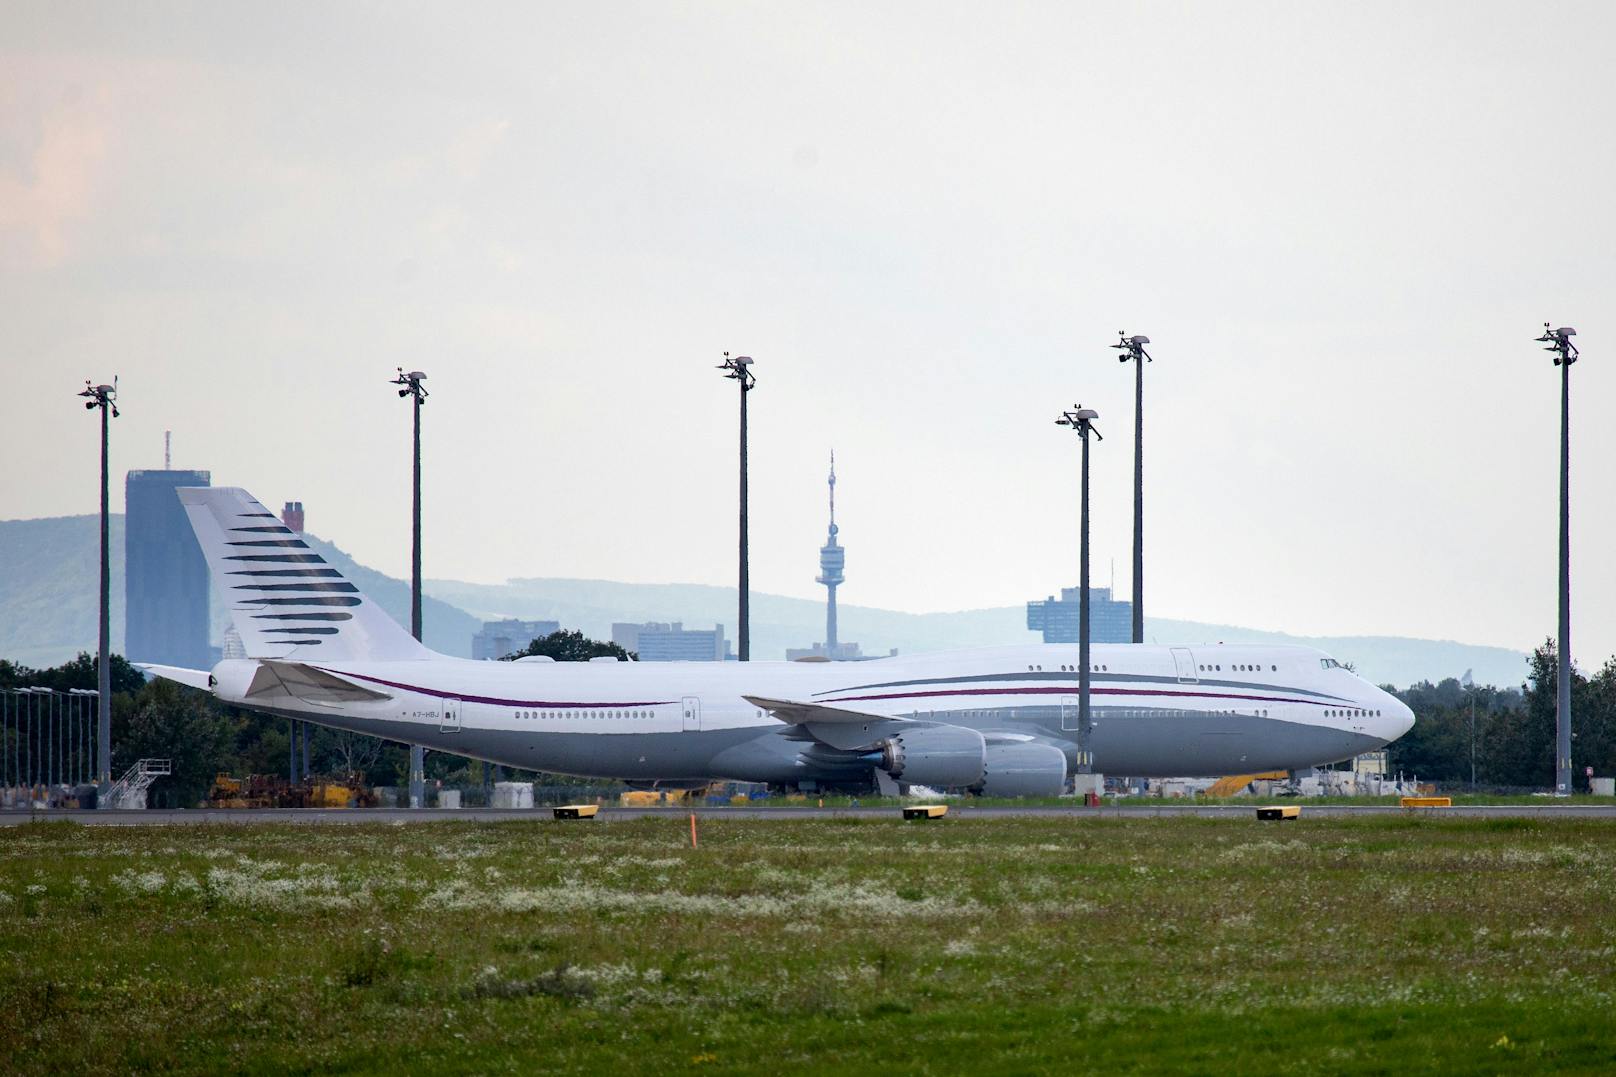 Luxus-Boeing 747 nach nur 30 Flugstunden verschrottet